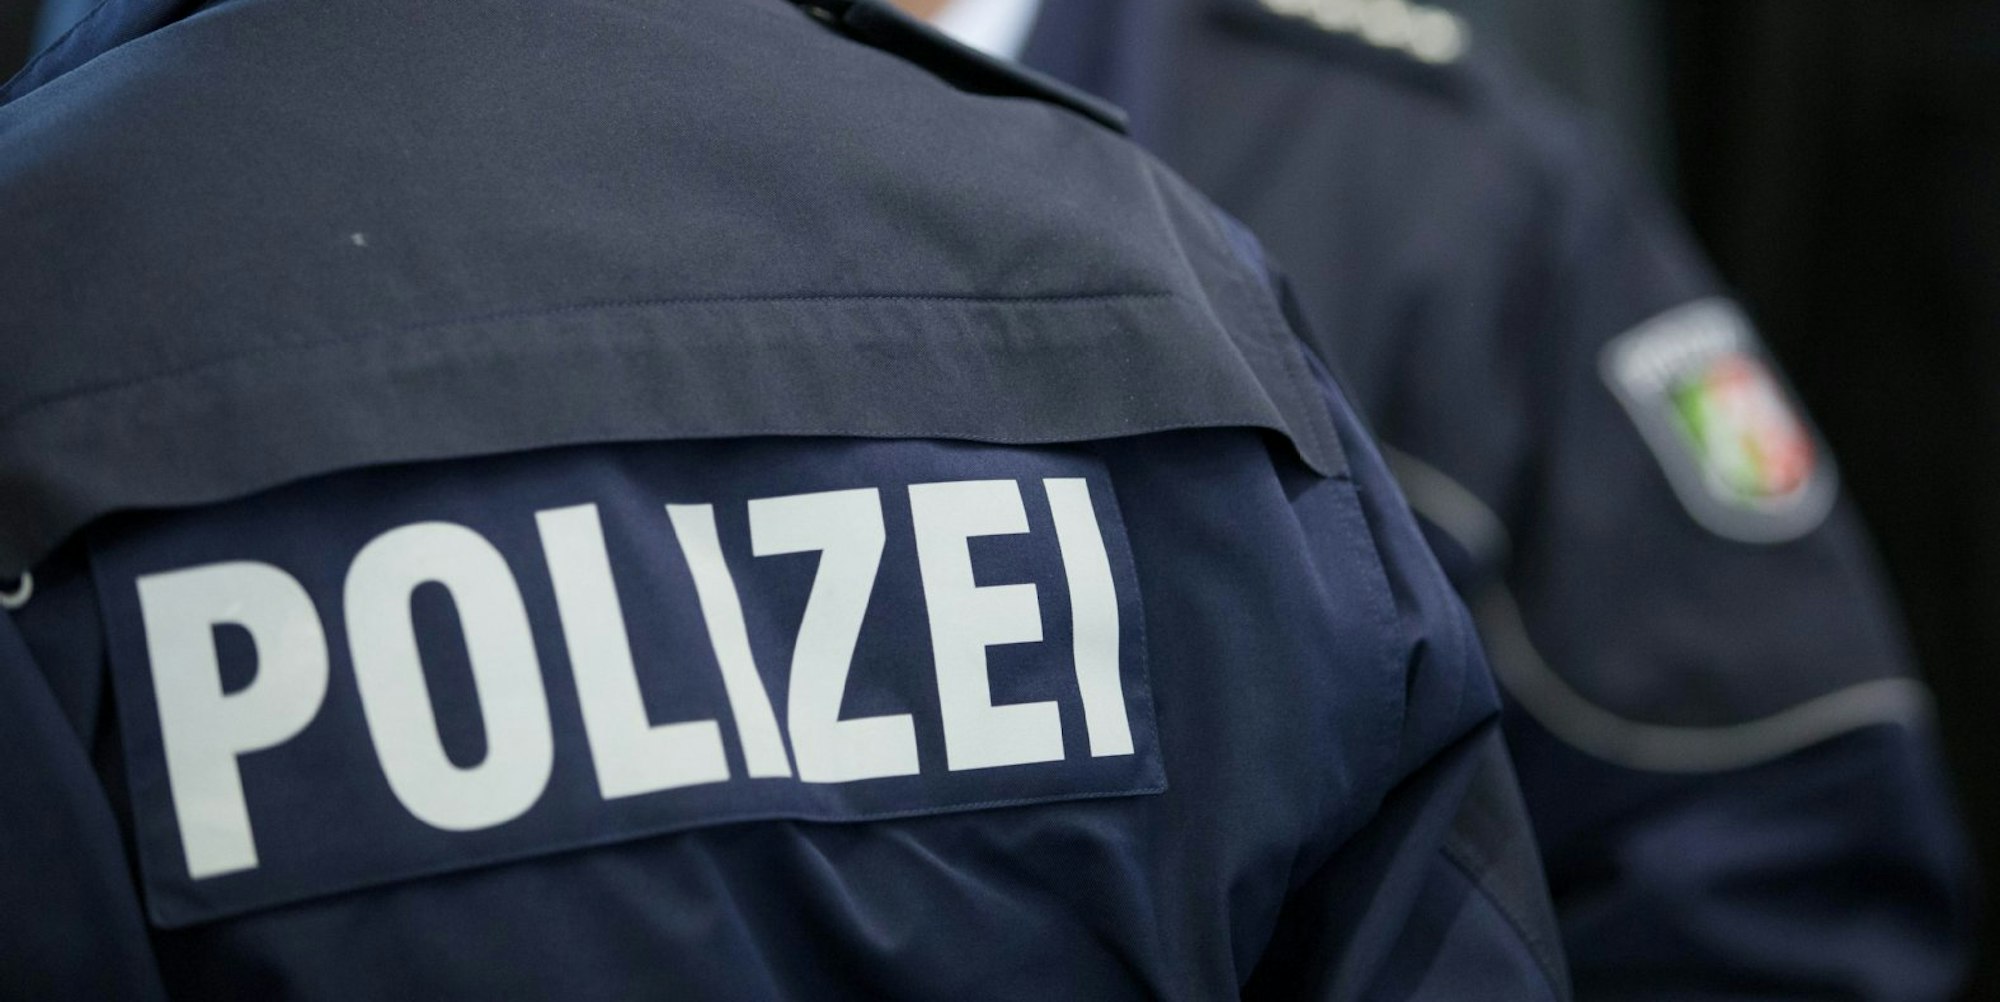 Die Polizei hat bei einem 43-Jährigen in Braunschweig Waffen und Chemikalien gefunden. Zuvor hatte der Mann seinem Chef mit Mord gedroht.